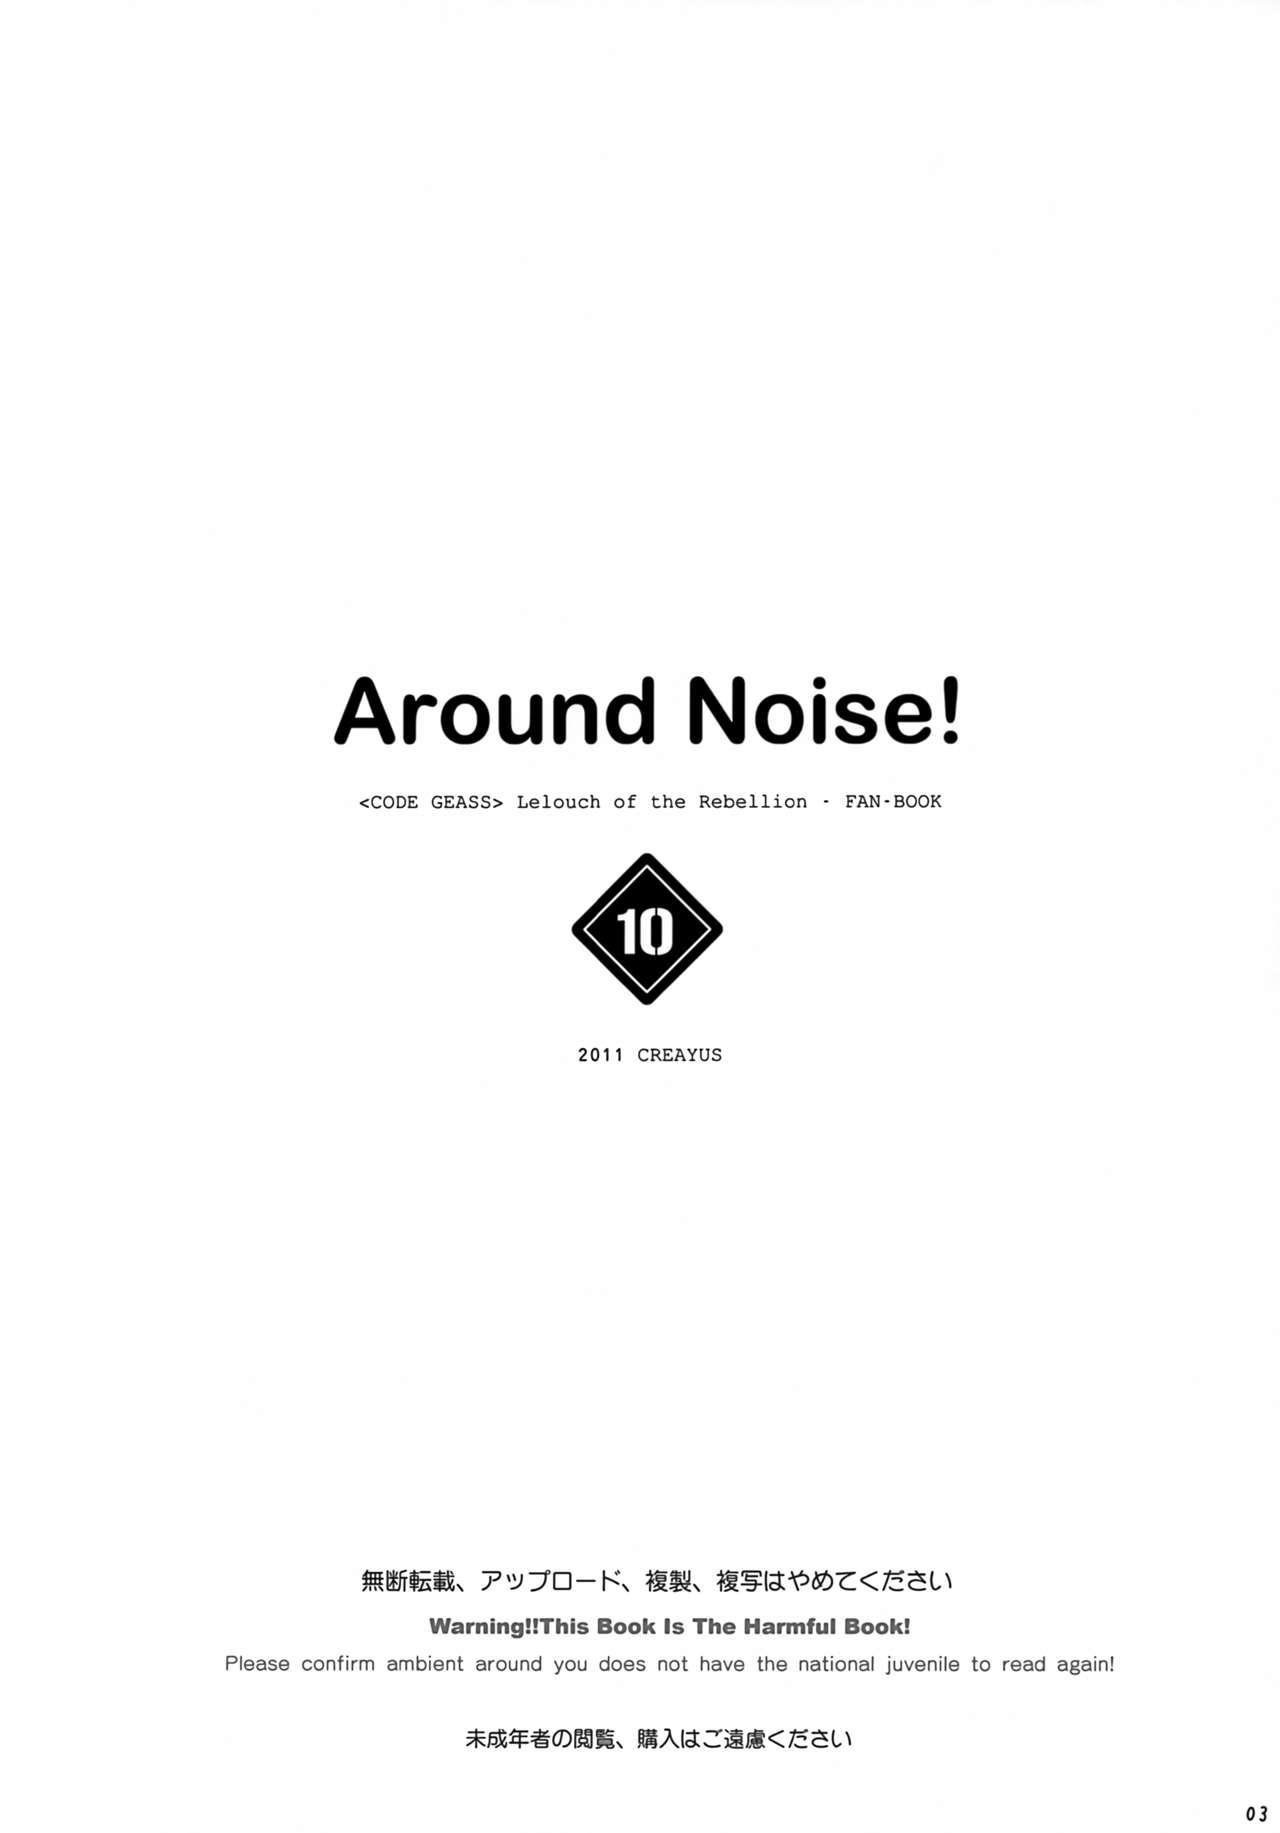 AROUND NOISE! 2